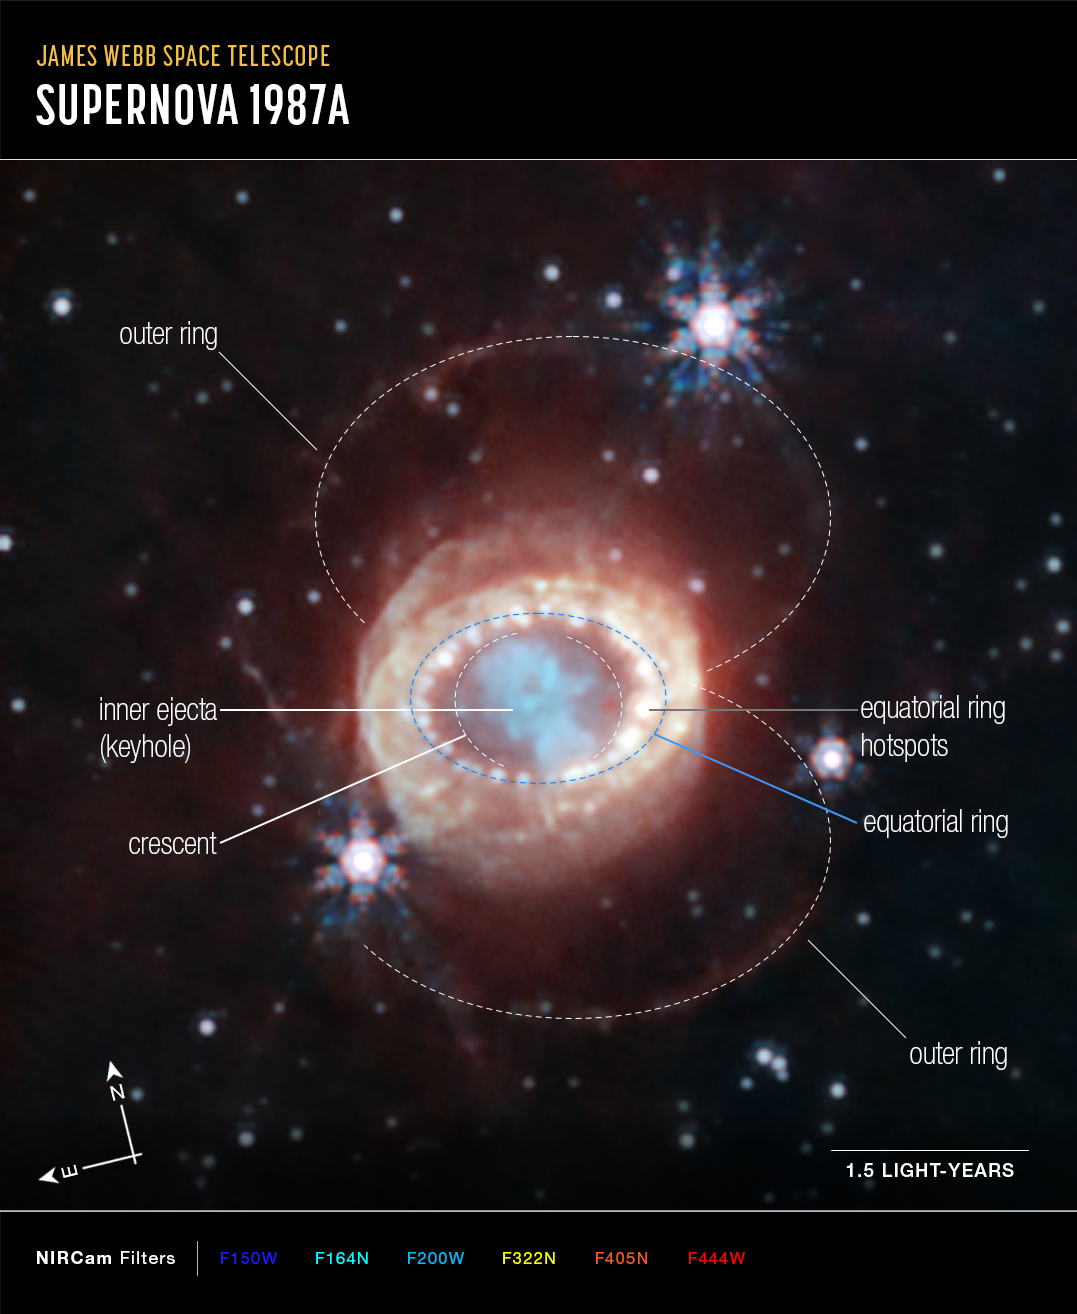 Na ilustracji: Obraz supernowej SN 1987A sfotografowany za pomocą Teleskopu Webba i kamery NIRCam w bliskiej podczerwieni, na którym oznaczono główne struktury, kierunki na niebie N-E i skala odpowiadająca 1,5 l.św. w odległości SN 1987A. Tutaj kolor niebieski odpowiada fotonom o długości fali 1,5 μm (filtr:F150W), kolor niebieskozielony – 1,64 i 2,0 μm (F164N, F200W), żółty - 3.23 μm (F323N), pomarańczowy – 4,05 μm (F405N) i czerwony – 4,44 μm (F444W). W centrum zdjęcia widać, że materia wyrzucona z supernowej utworzyła coś na kształt dziurki od klucza (patrz → keyhole), po obu stronach której znajdują się słabe struktury w kształcie sierpa (patrz → crescent). Te ostatnie zostały  zaobserwowane po raz pierwszy przez Teleskop Webba. Dalej widać pierścień równikowy (patrz → equatorial ring) - pełen jasnych i gorących plam, który powstał jeszcze wcześniej, bo dziesiątki tysięcy lat przed wybuchem tej supernowej. Całość otaczają emisje rozproszonego światła i dwa słabe, zewnętrzne pierścienie (patrz → outer ring). Źródło: NASA, ESA, CSA, Mikako Matsuura (Cardiff University), Richard Arendt (NASA-GSFC, UMBC), Claes Fransson (Stockholm University), Josefin Larsson (KTH), Alyssa Pagan (STScI)